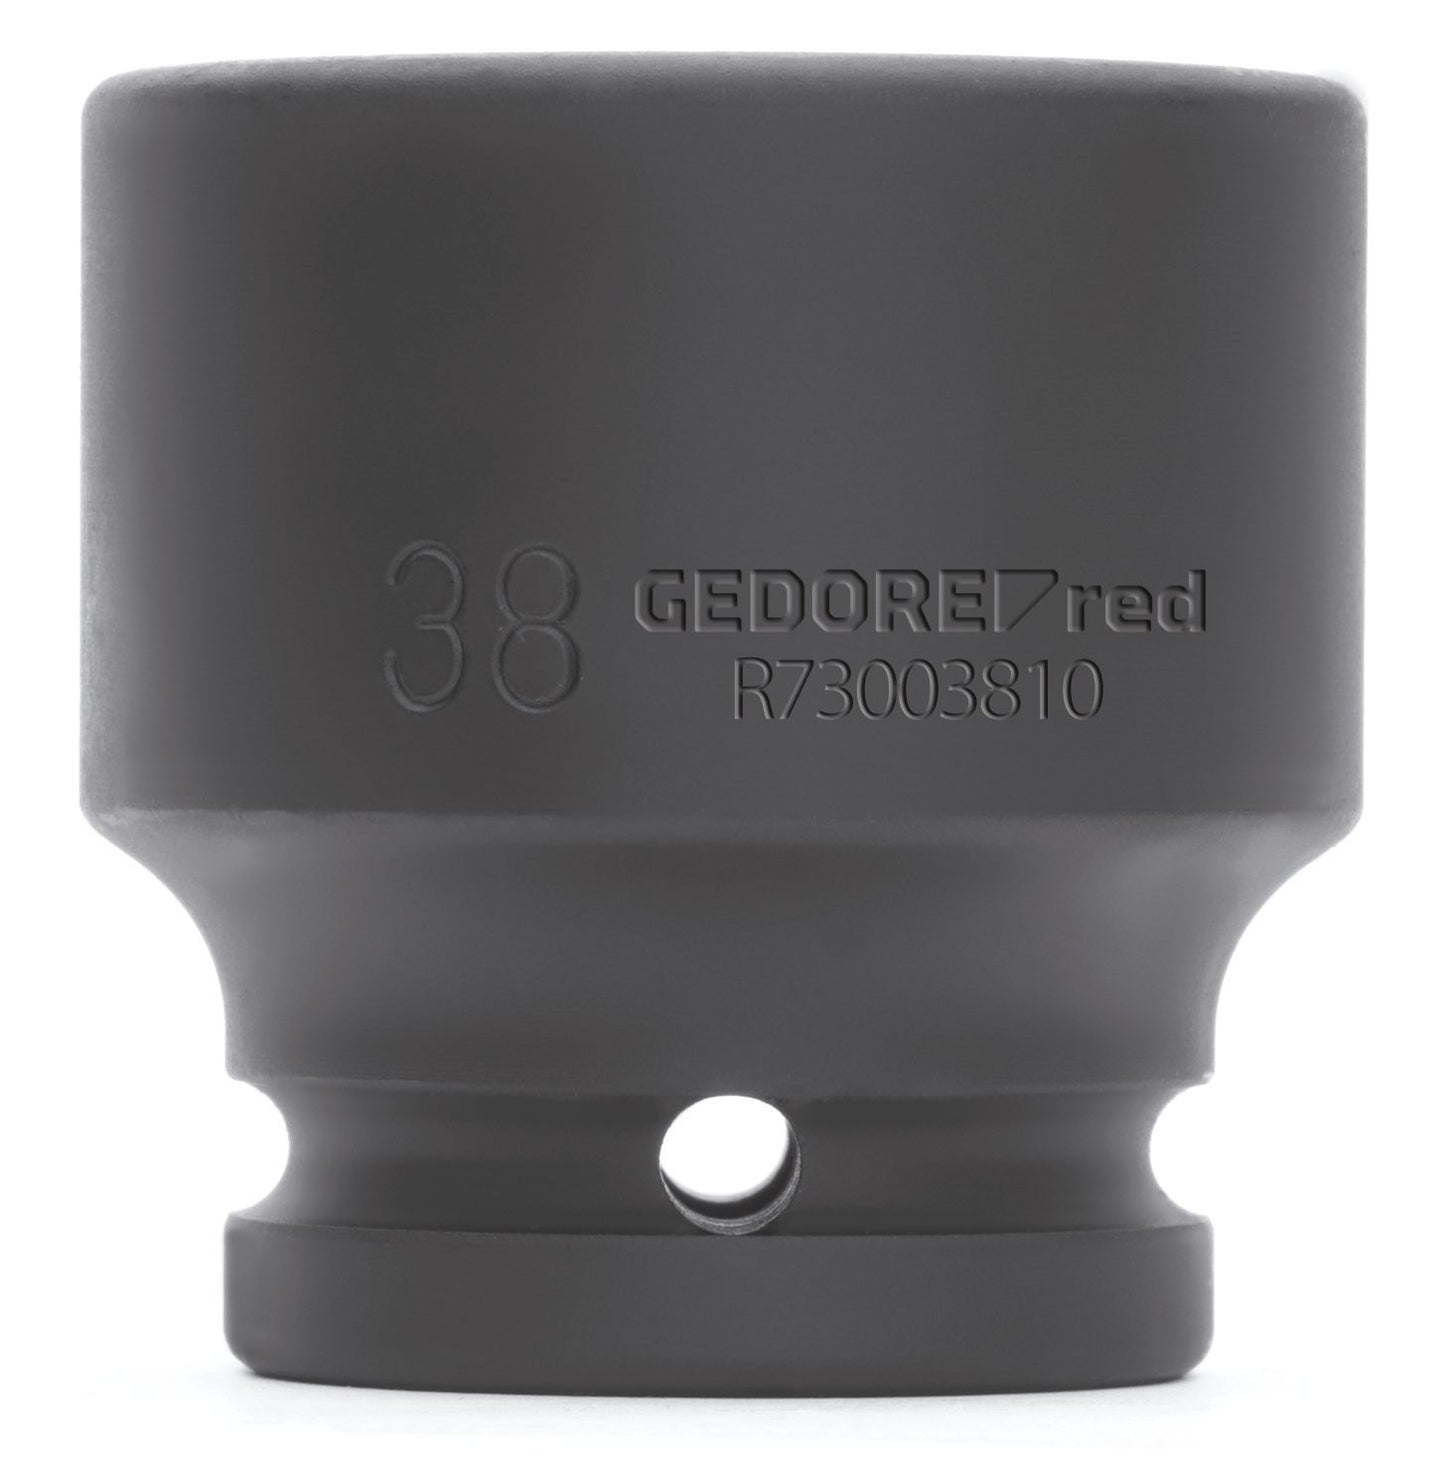 GEDORE red R73002209 - Vaso de impacto 3/4", hexagonal, 22 mm L=50 mm (3300593)